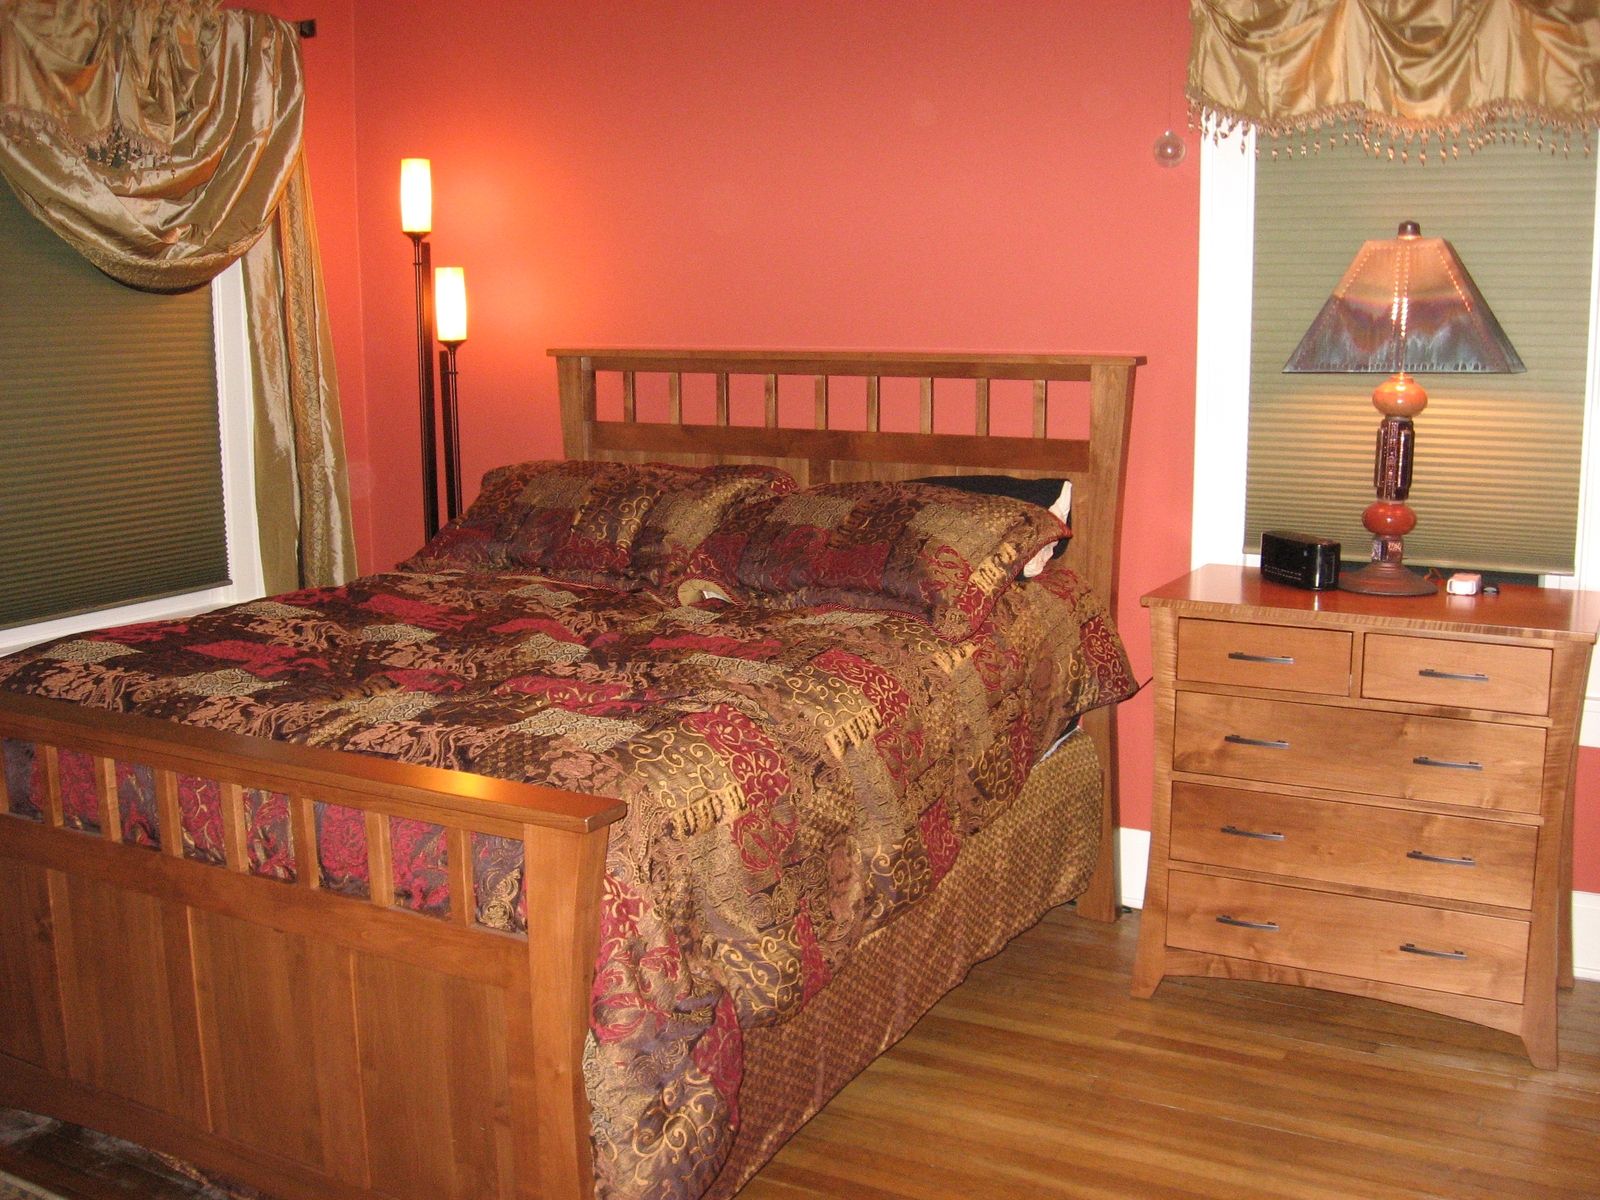 maple bedroom furniture ideas